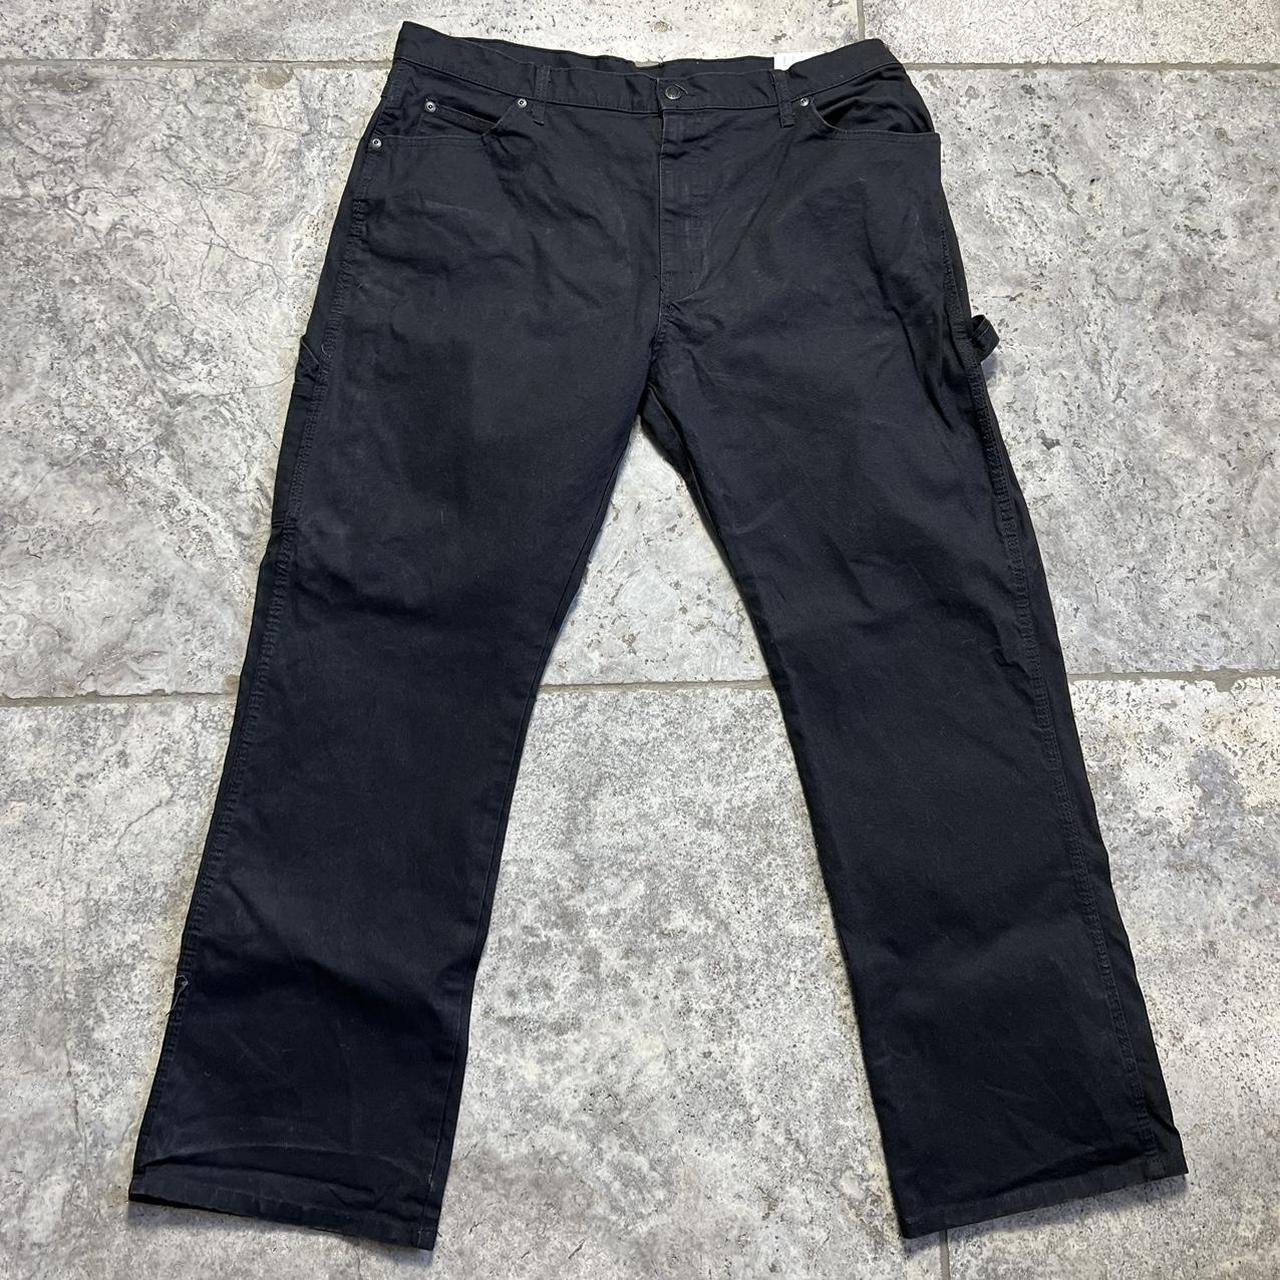 Dickies black carpenter jeans 38x32